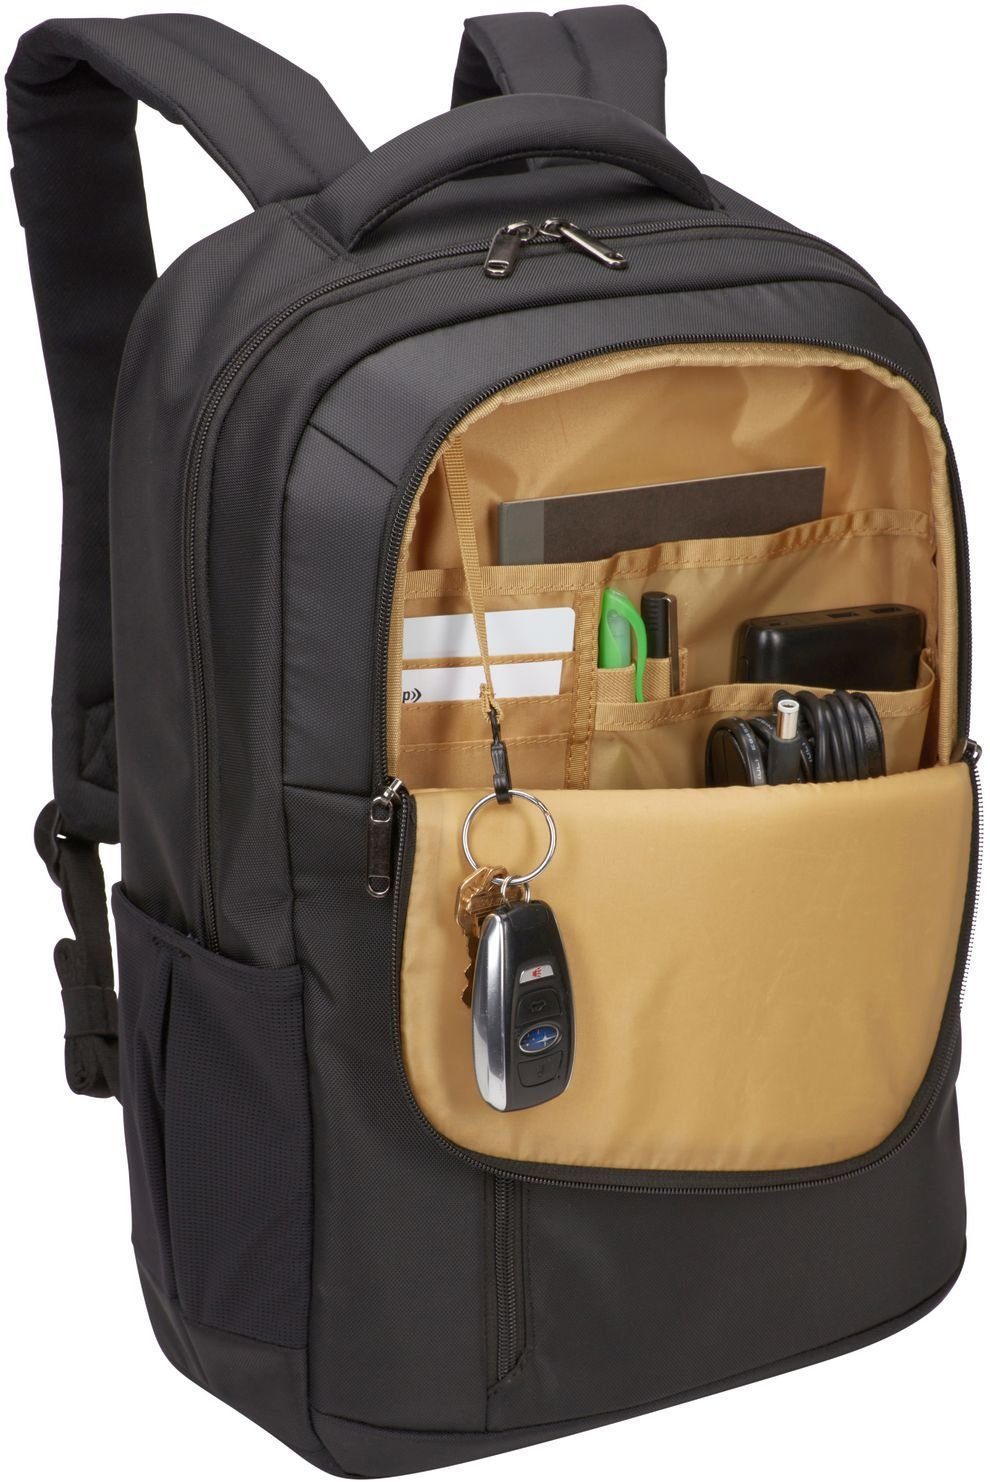 Backpack Black Notebookrucksack Logic 15,6" Propel Case